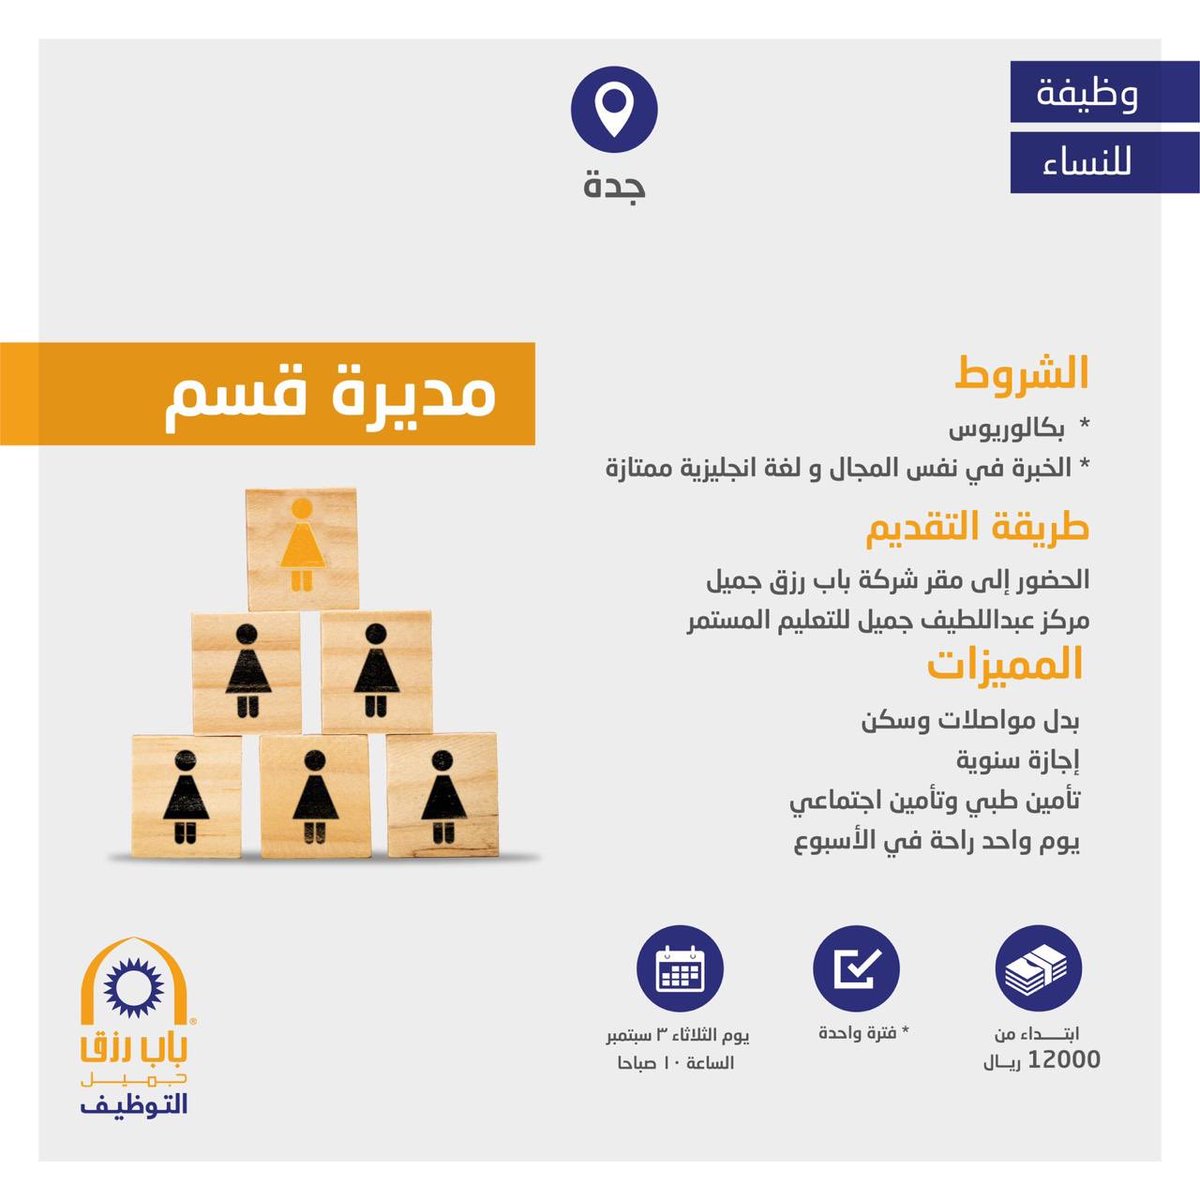 شركة باب رزق جميل تعلن عن وظائف شاغرة للنساء في جدة براتب 12000 ريال